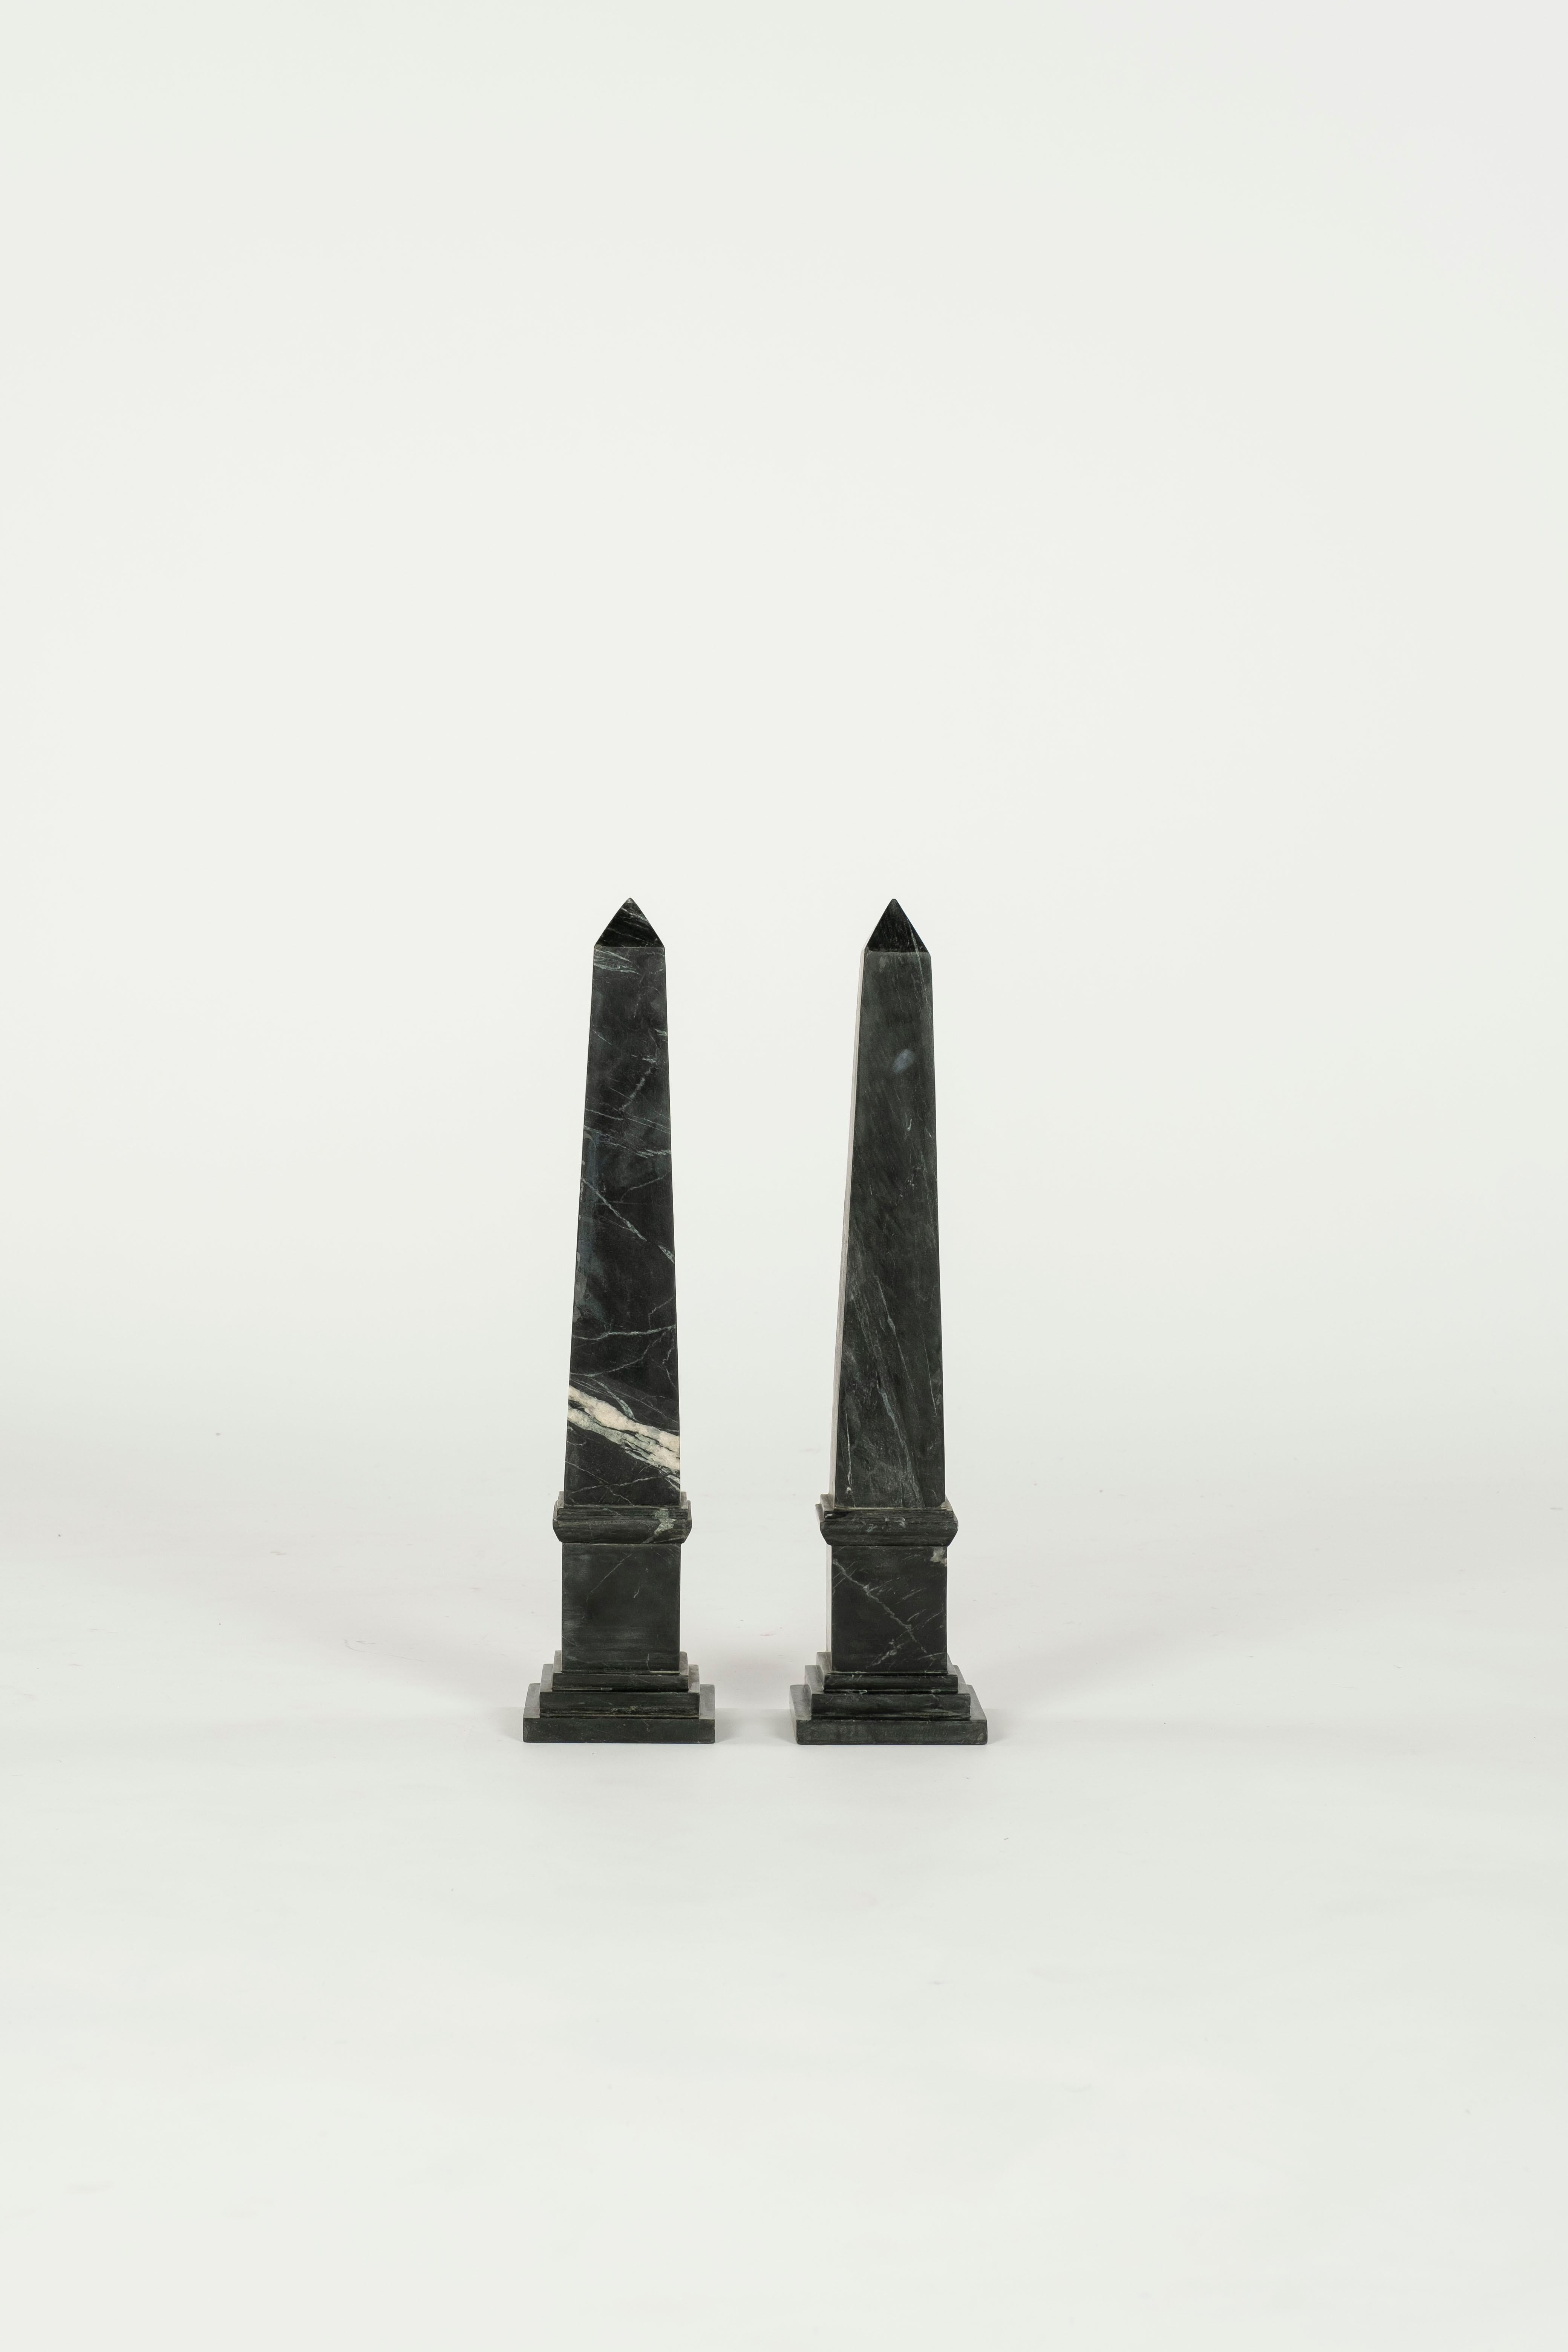 Lovely pair of Black Marble Obelisks.